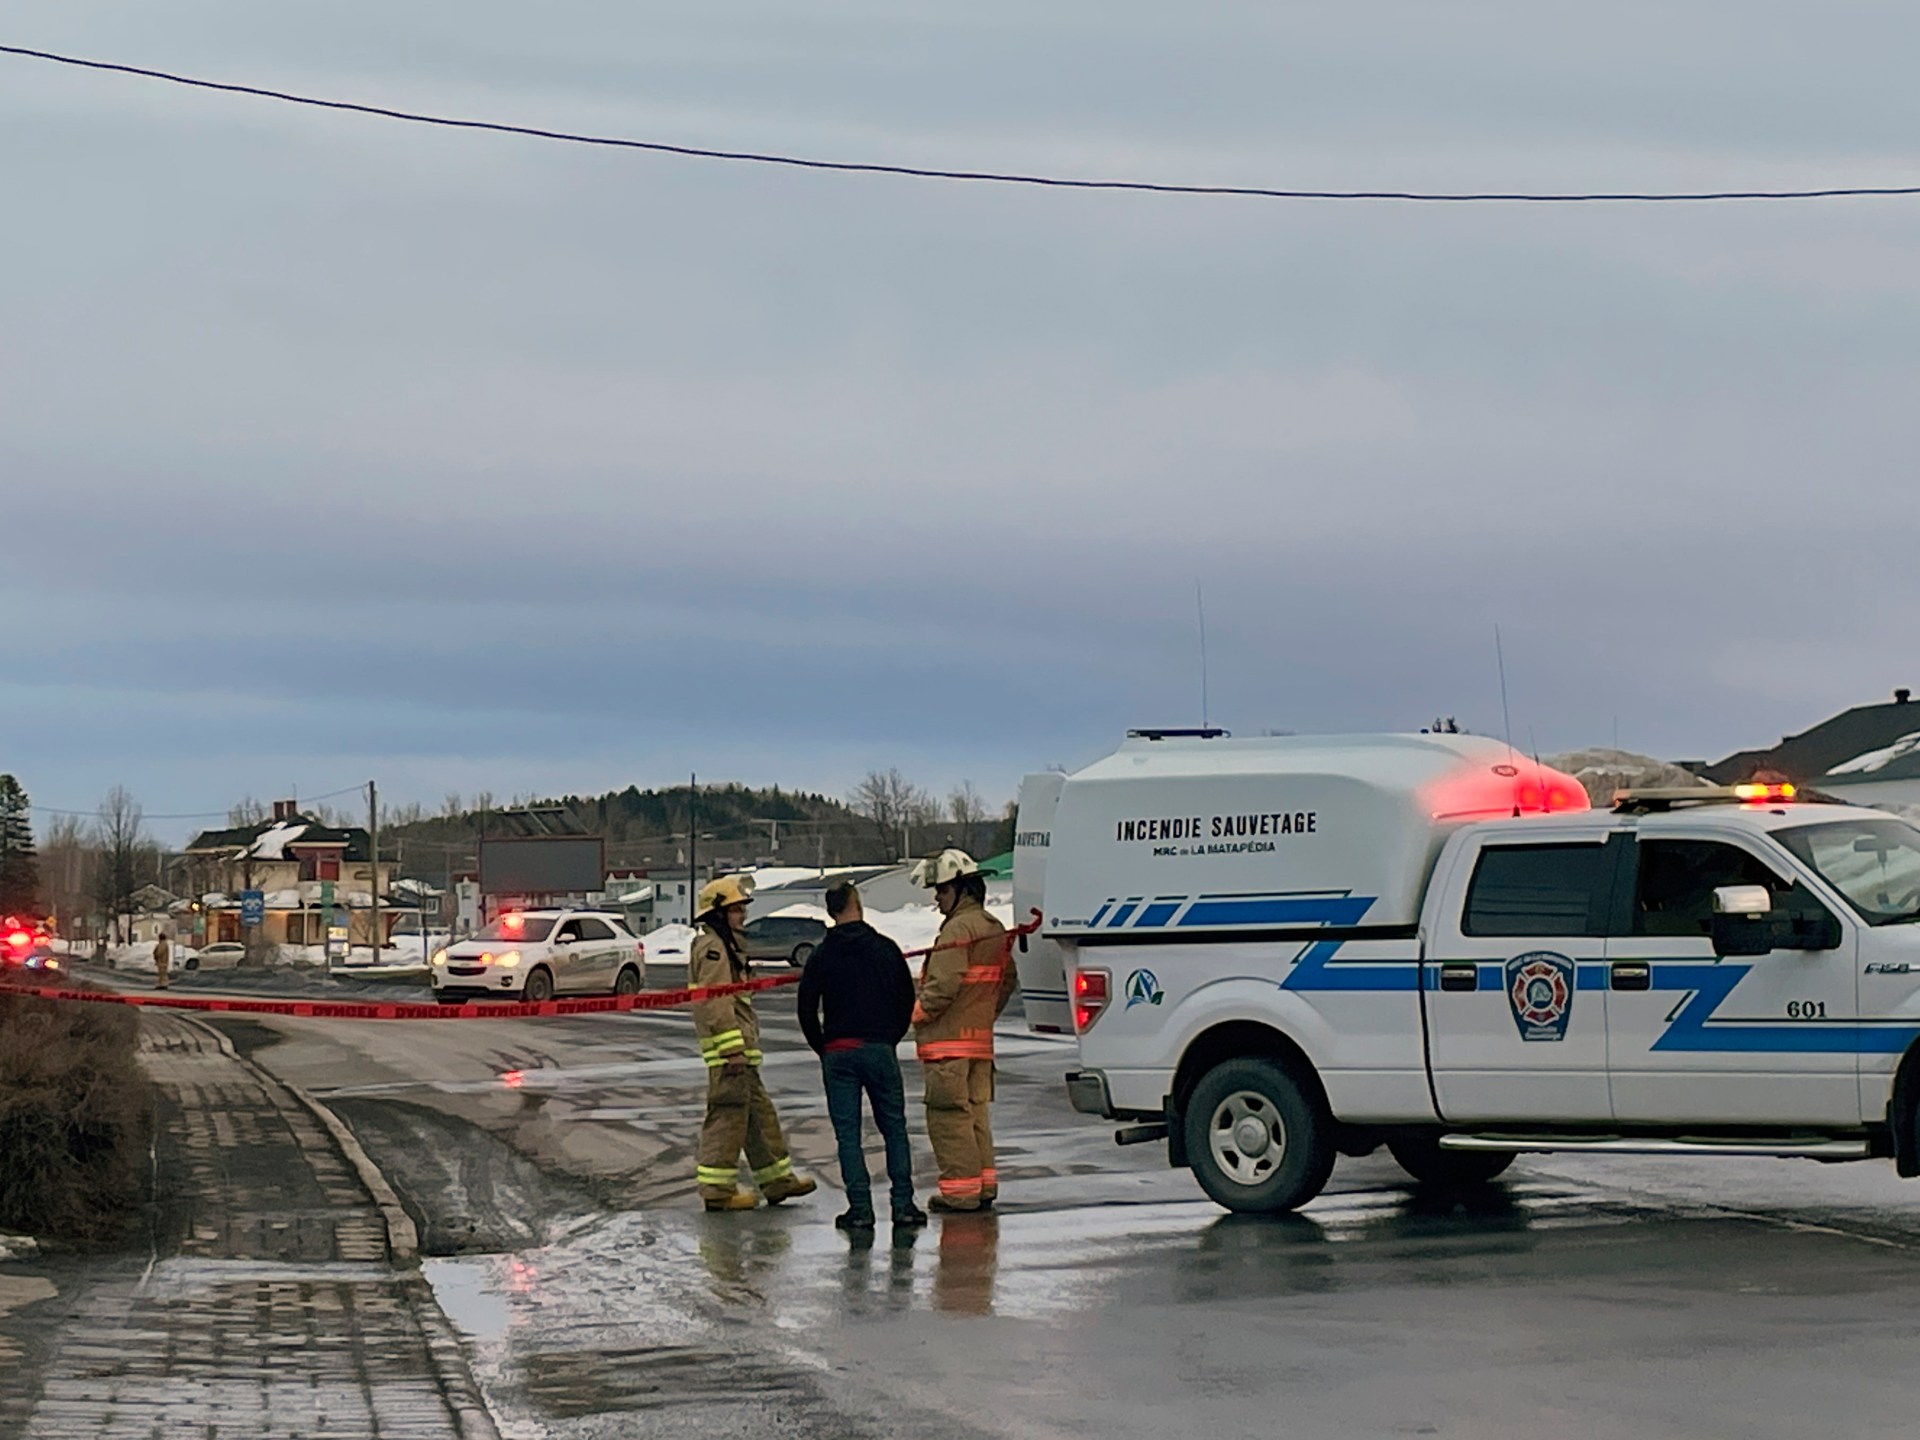 캐나다: 트럭이 보행자를 들이받아 2명이 사망하고 9명이 부상  범죄 뉴스